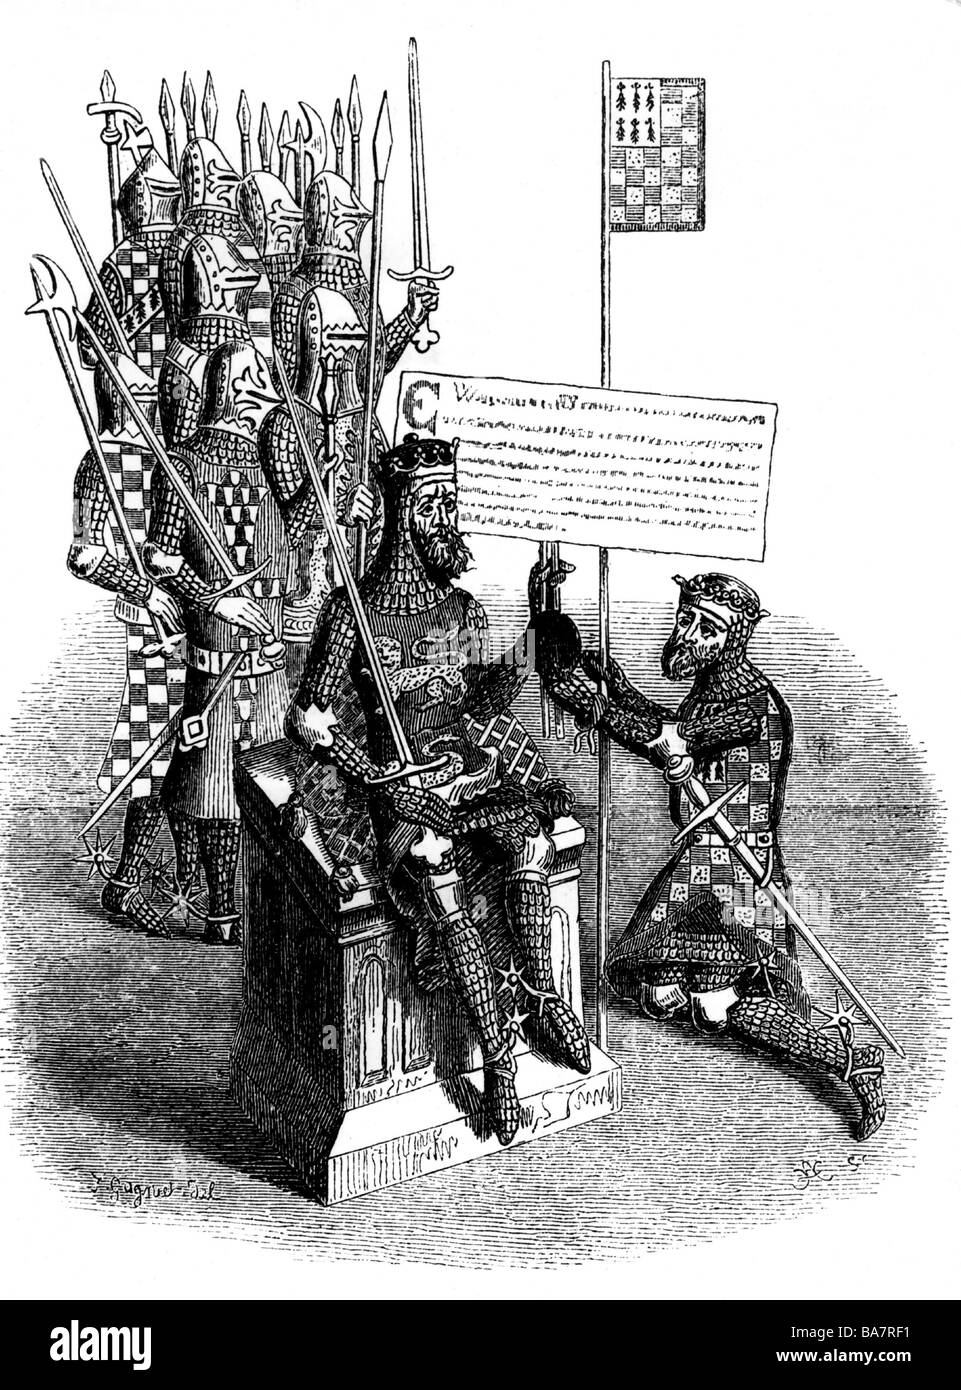 William le Conquérant 'je', circa 1027 - 9.9.1087, roi d'Angleterre 1066 - 1087, l'investissement le duc de Bretagne, gravure sur cuivre, 'Registrum Honoris de Richemund', Londres, 1722, l'artiste n'a pas d'auteur pour être effacé Banque D'Images